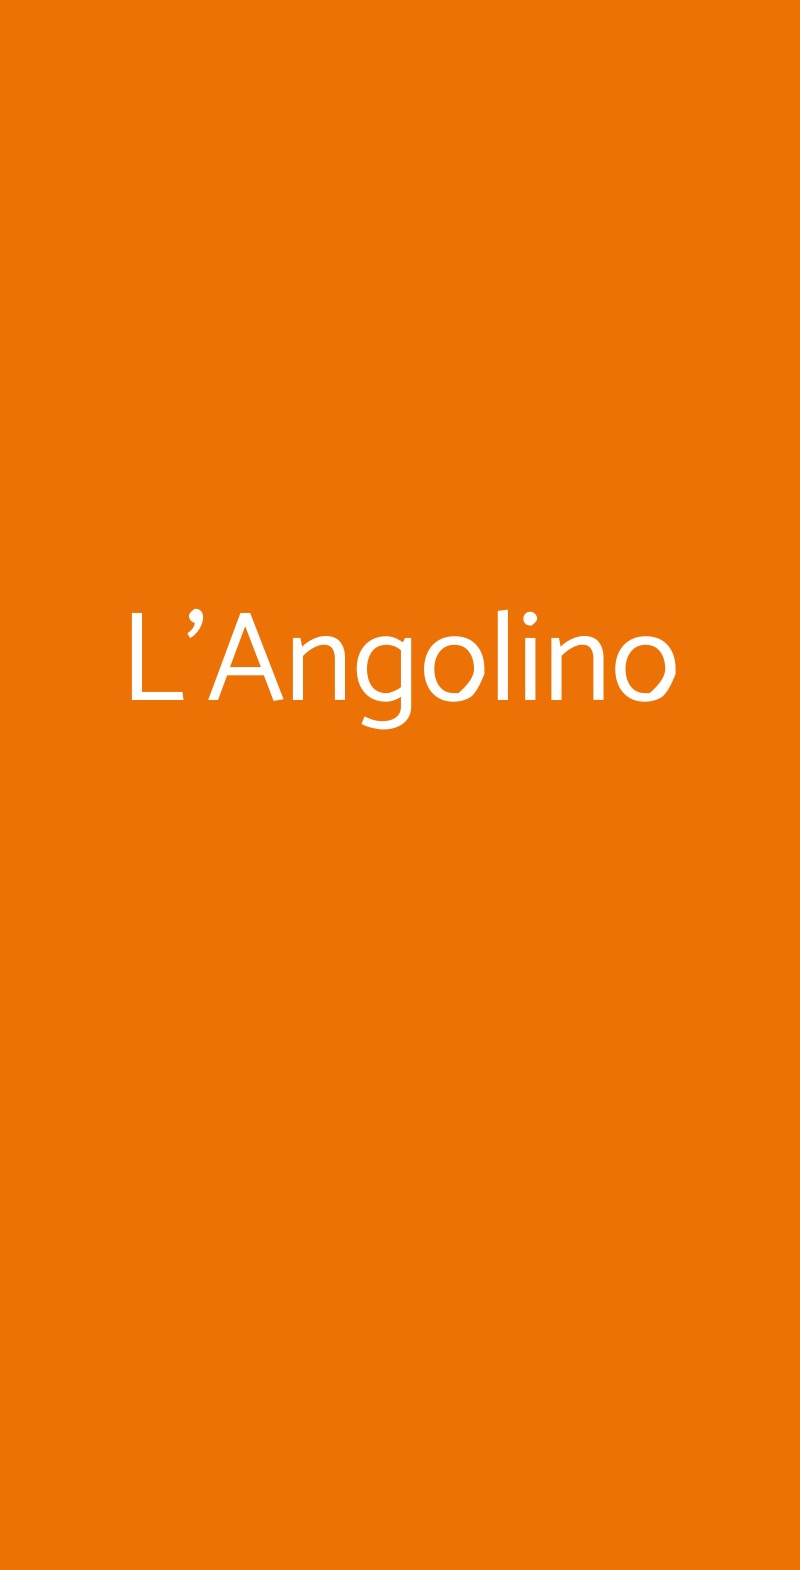 L'Angolino Milano menù 1 pagina